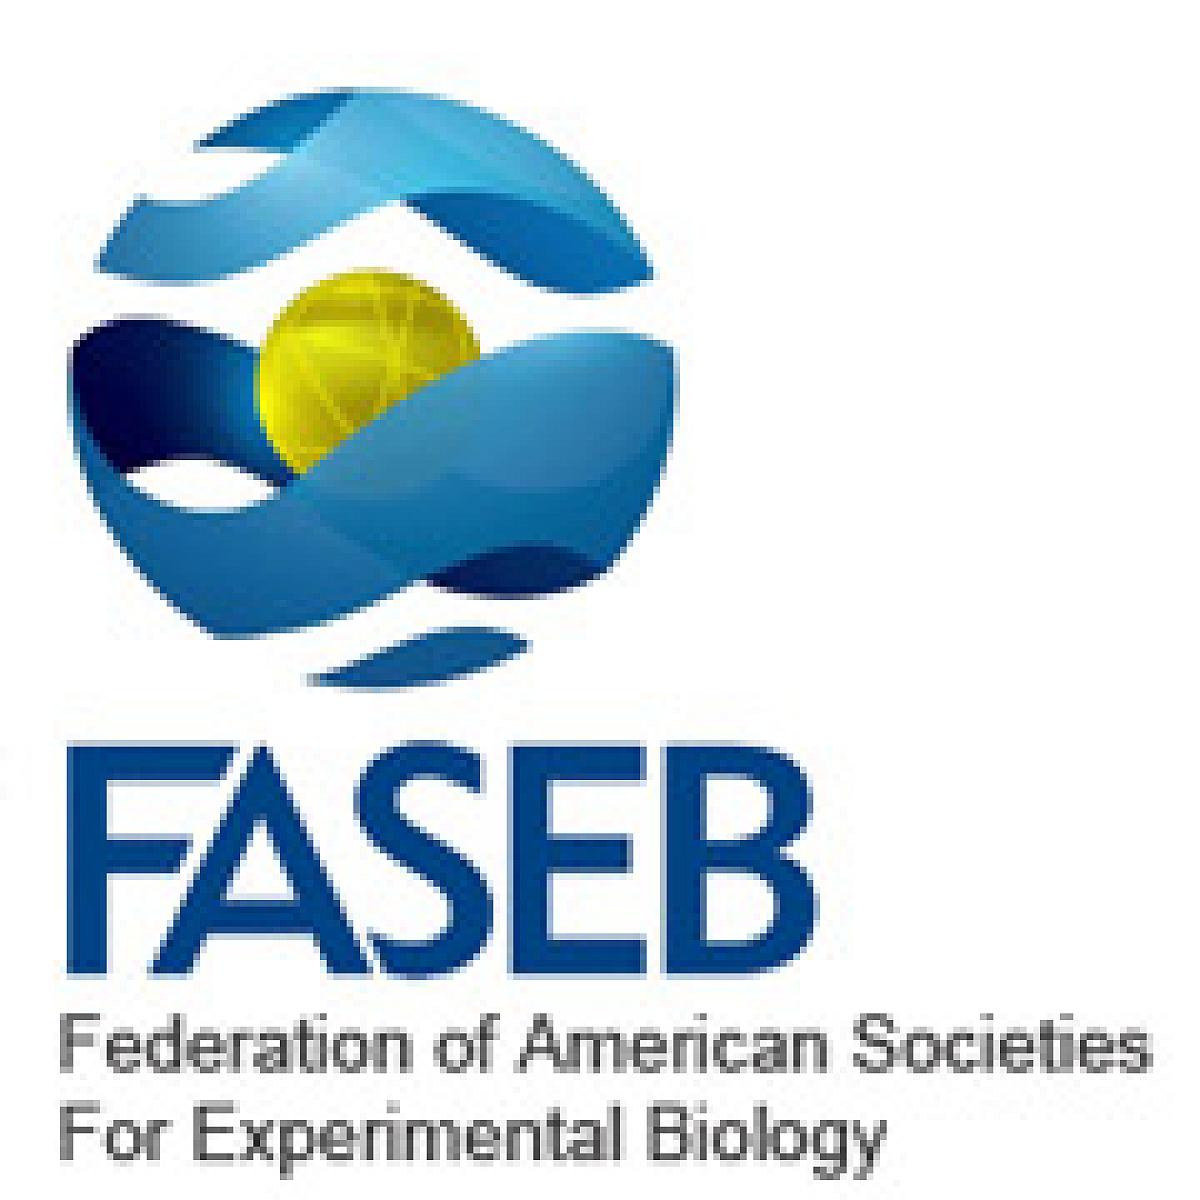 FASEB logo